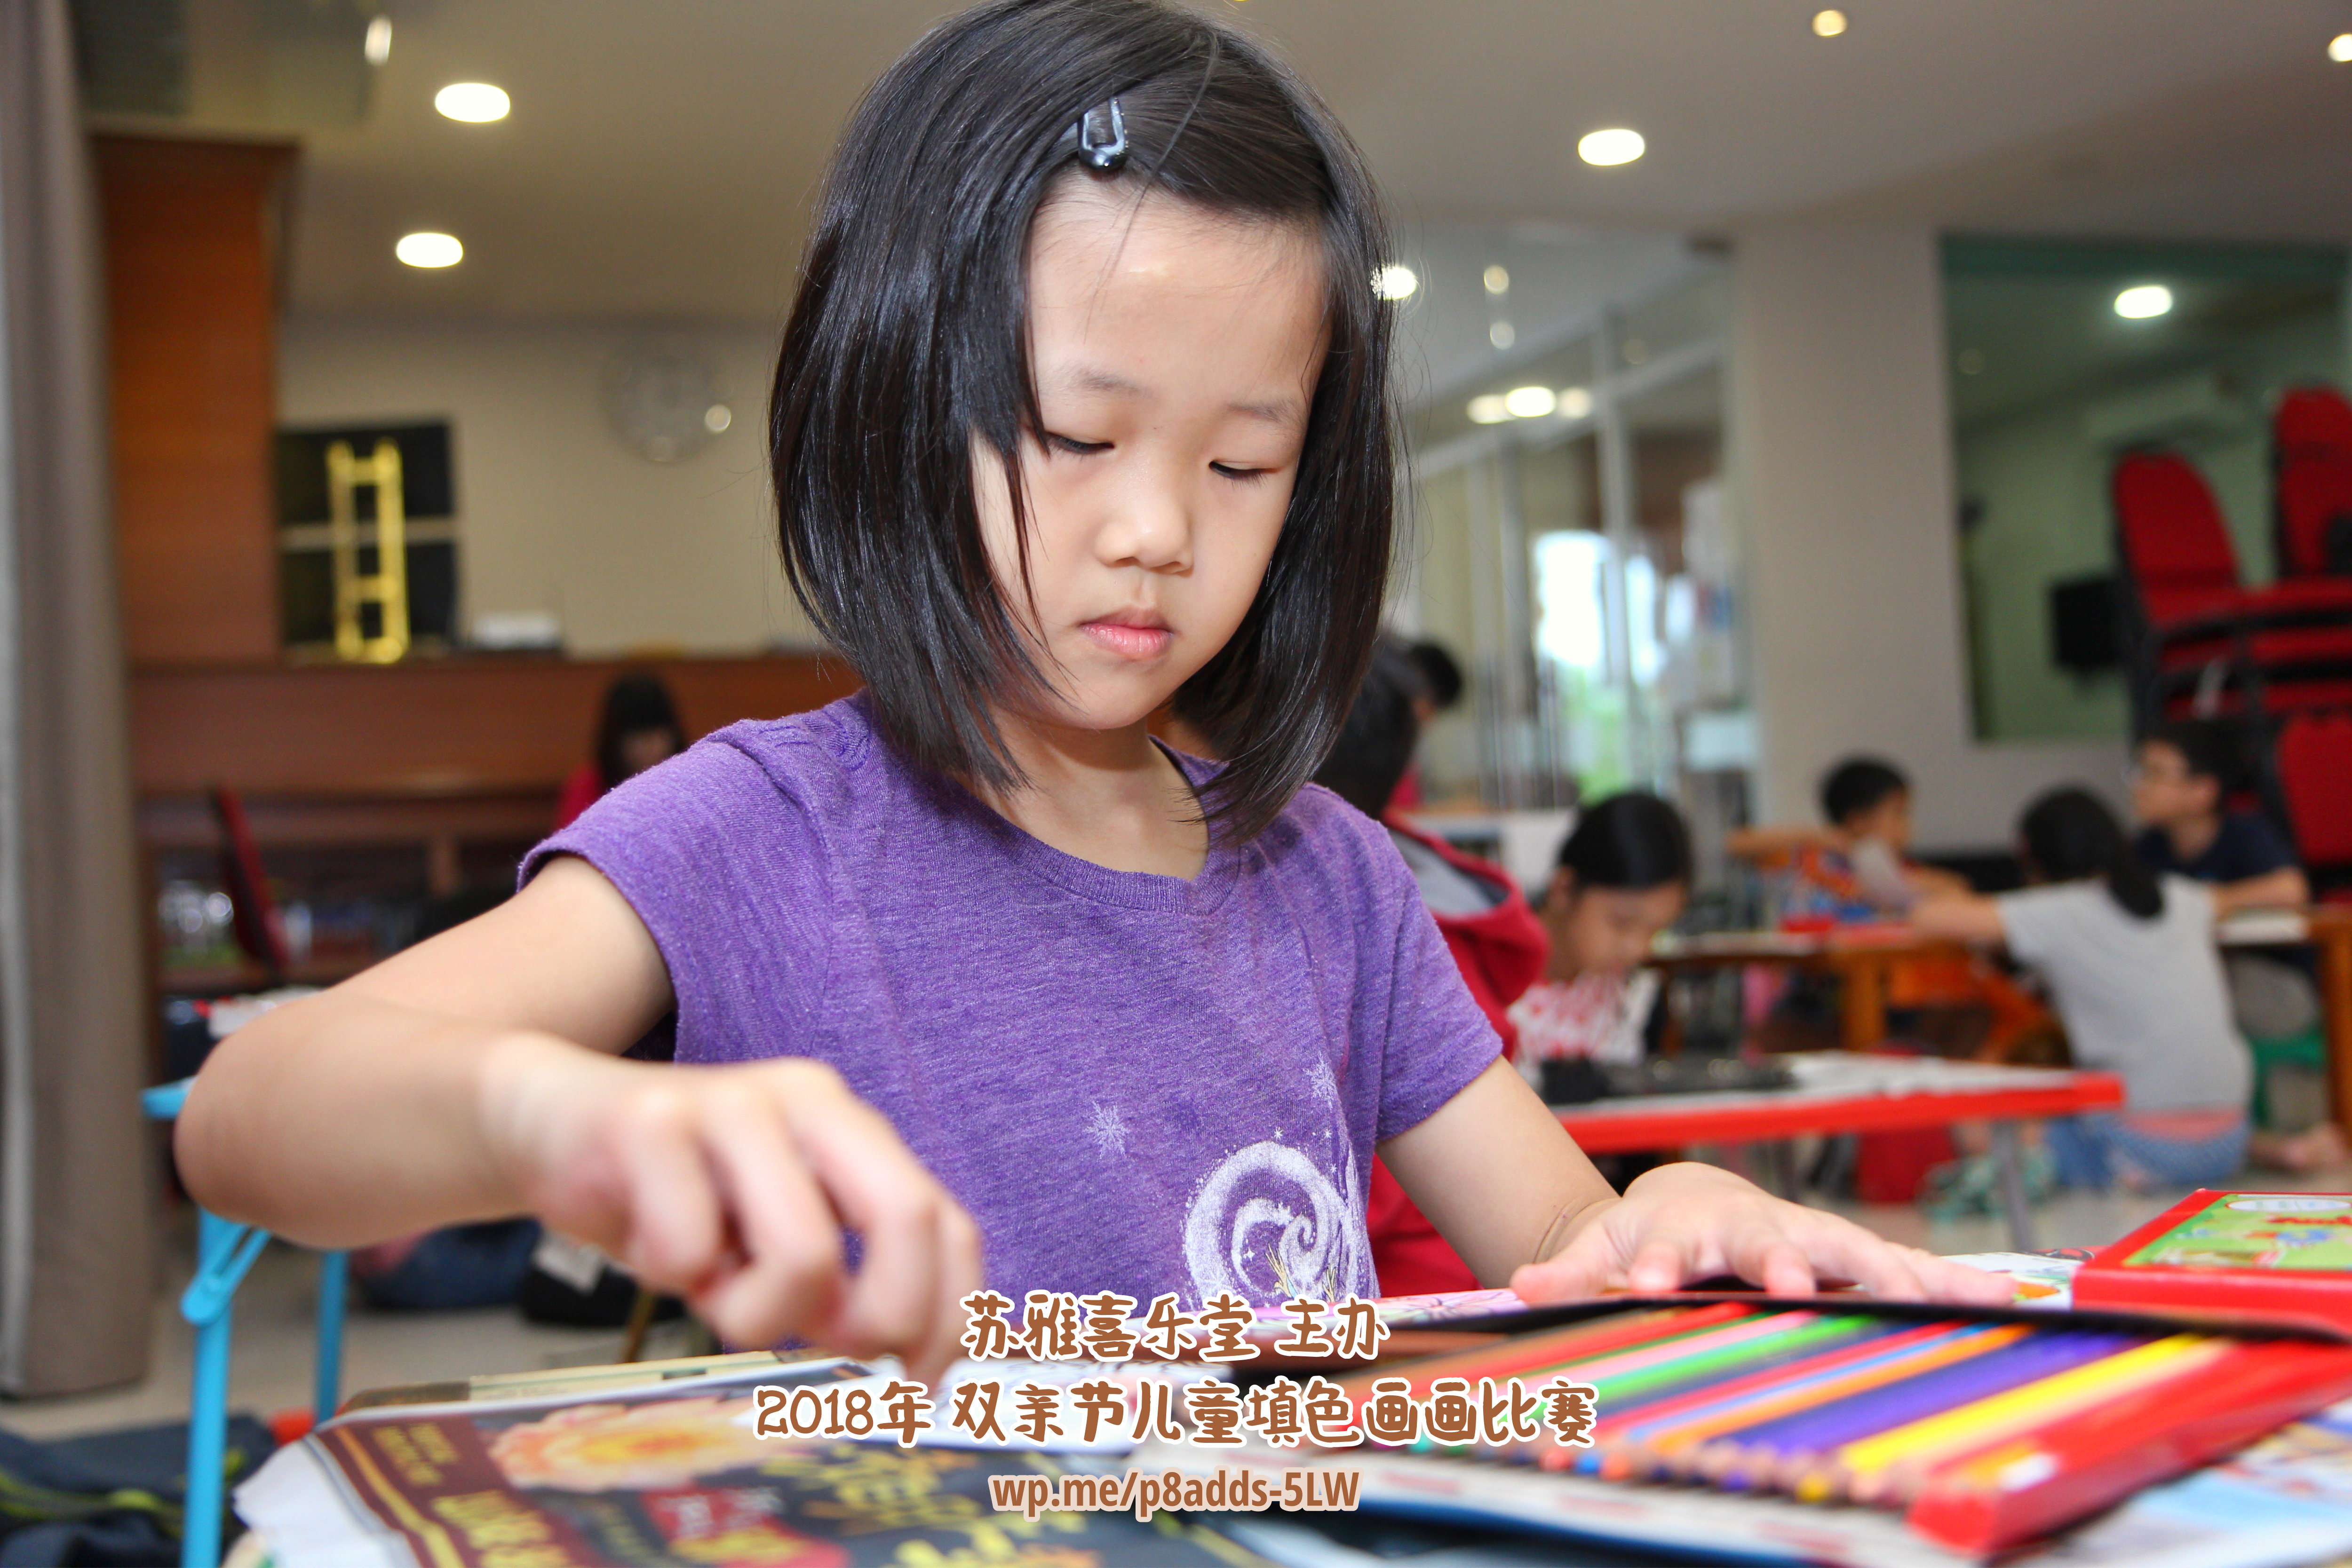 Batu Pahat Gereja Joy Soga Colouring Contest 苏雅喜乐堂主办2018年 峇株巴辖双亲节儿童填色画画比赛 培养儿童对彩色画画的兴趣 发掘美术的潜能 C1-47